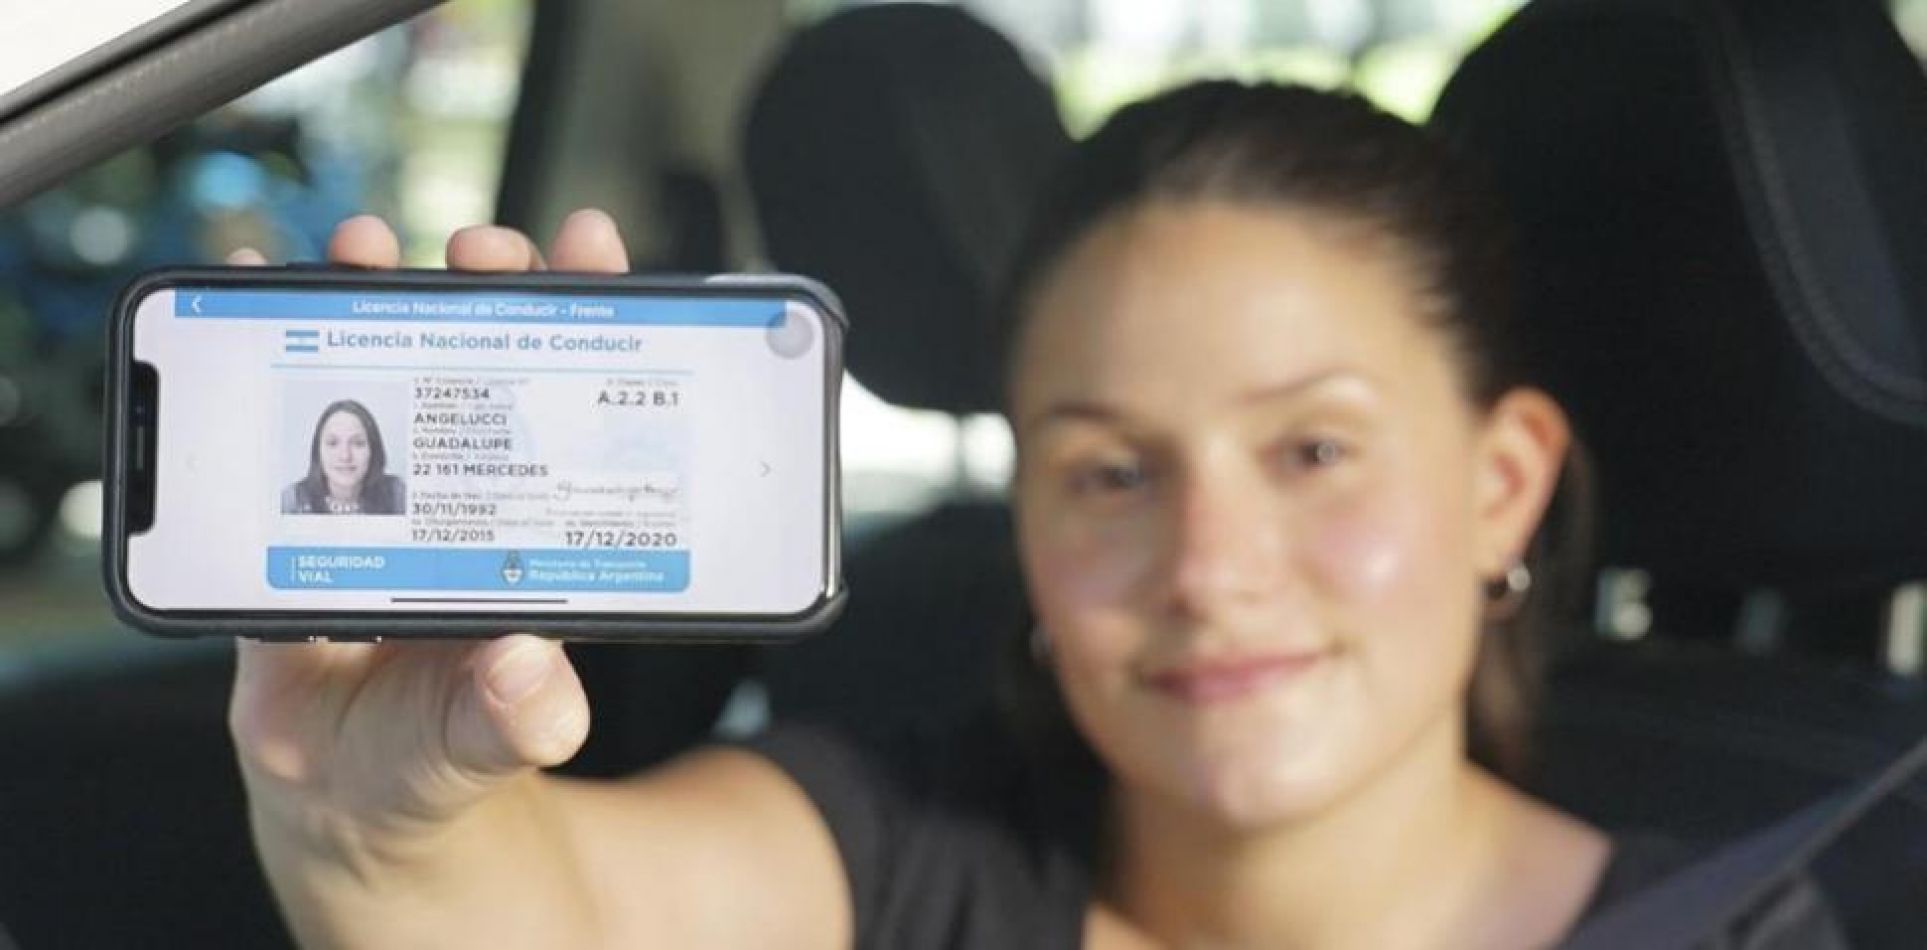 Registro exprés: cómo renovar la licencia de conducir sin turno previo y cuánto cuesta | Garantia Plus